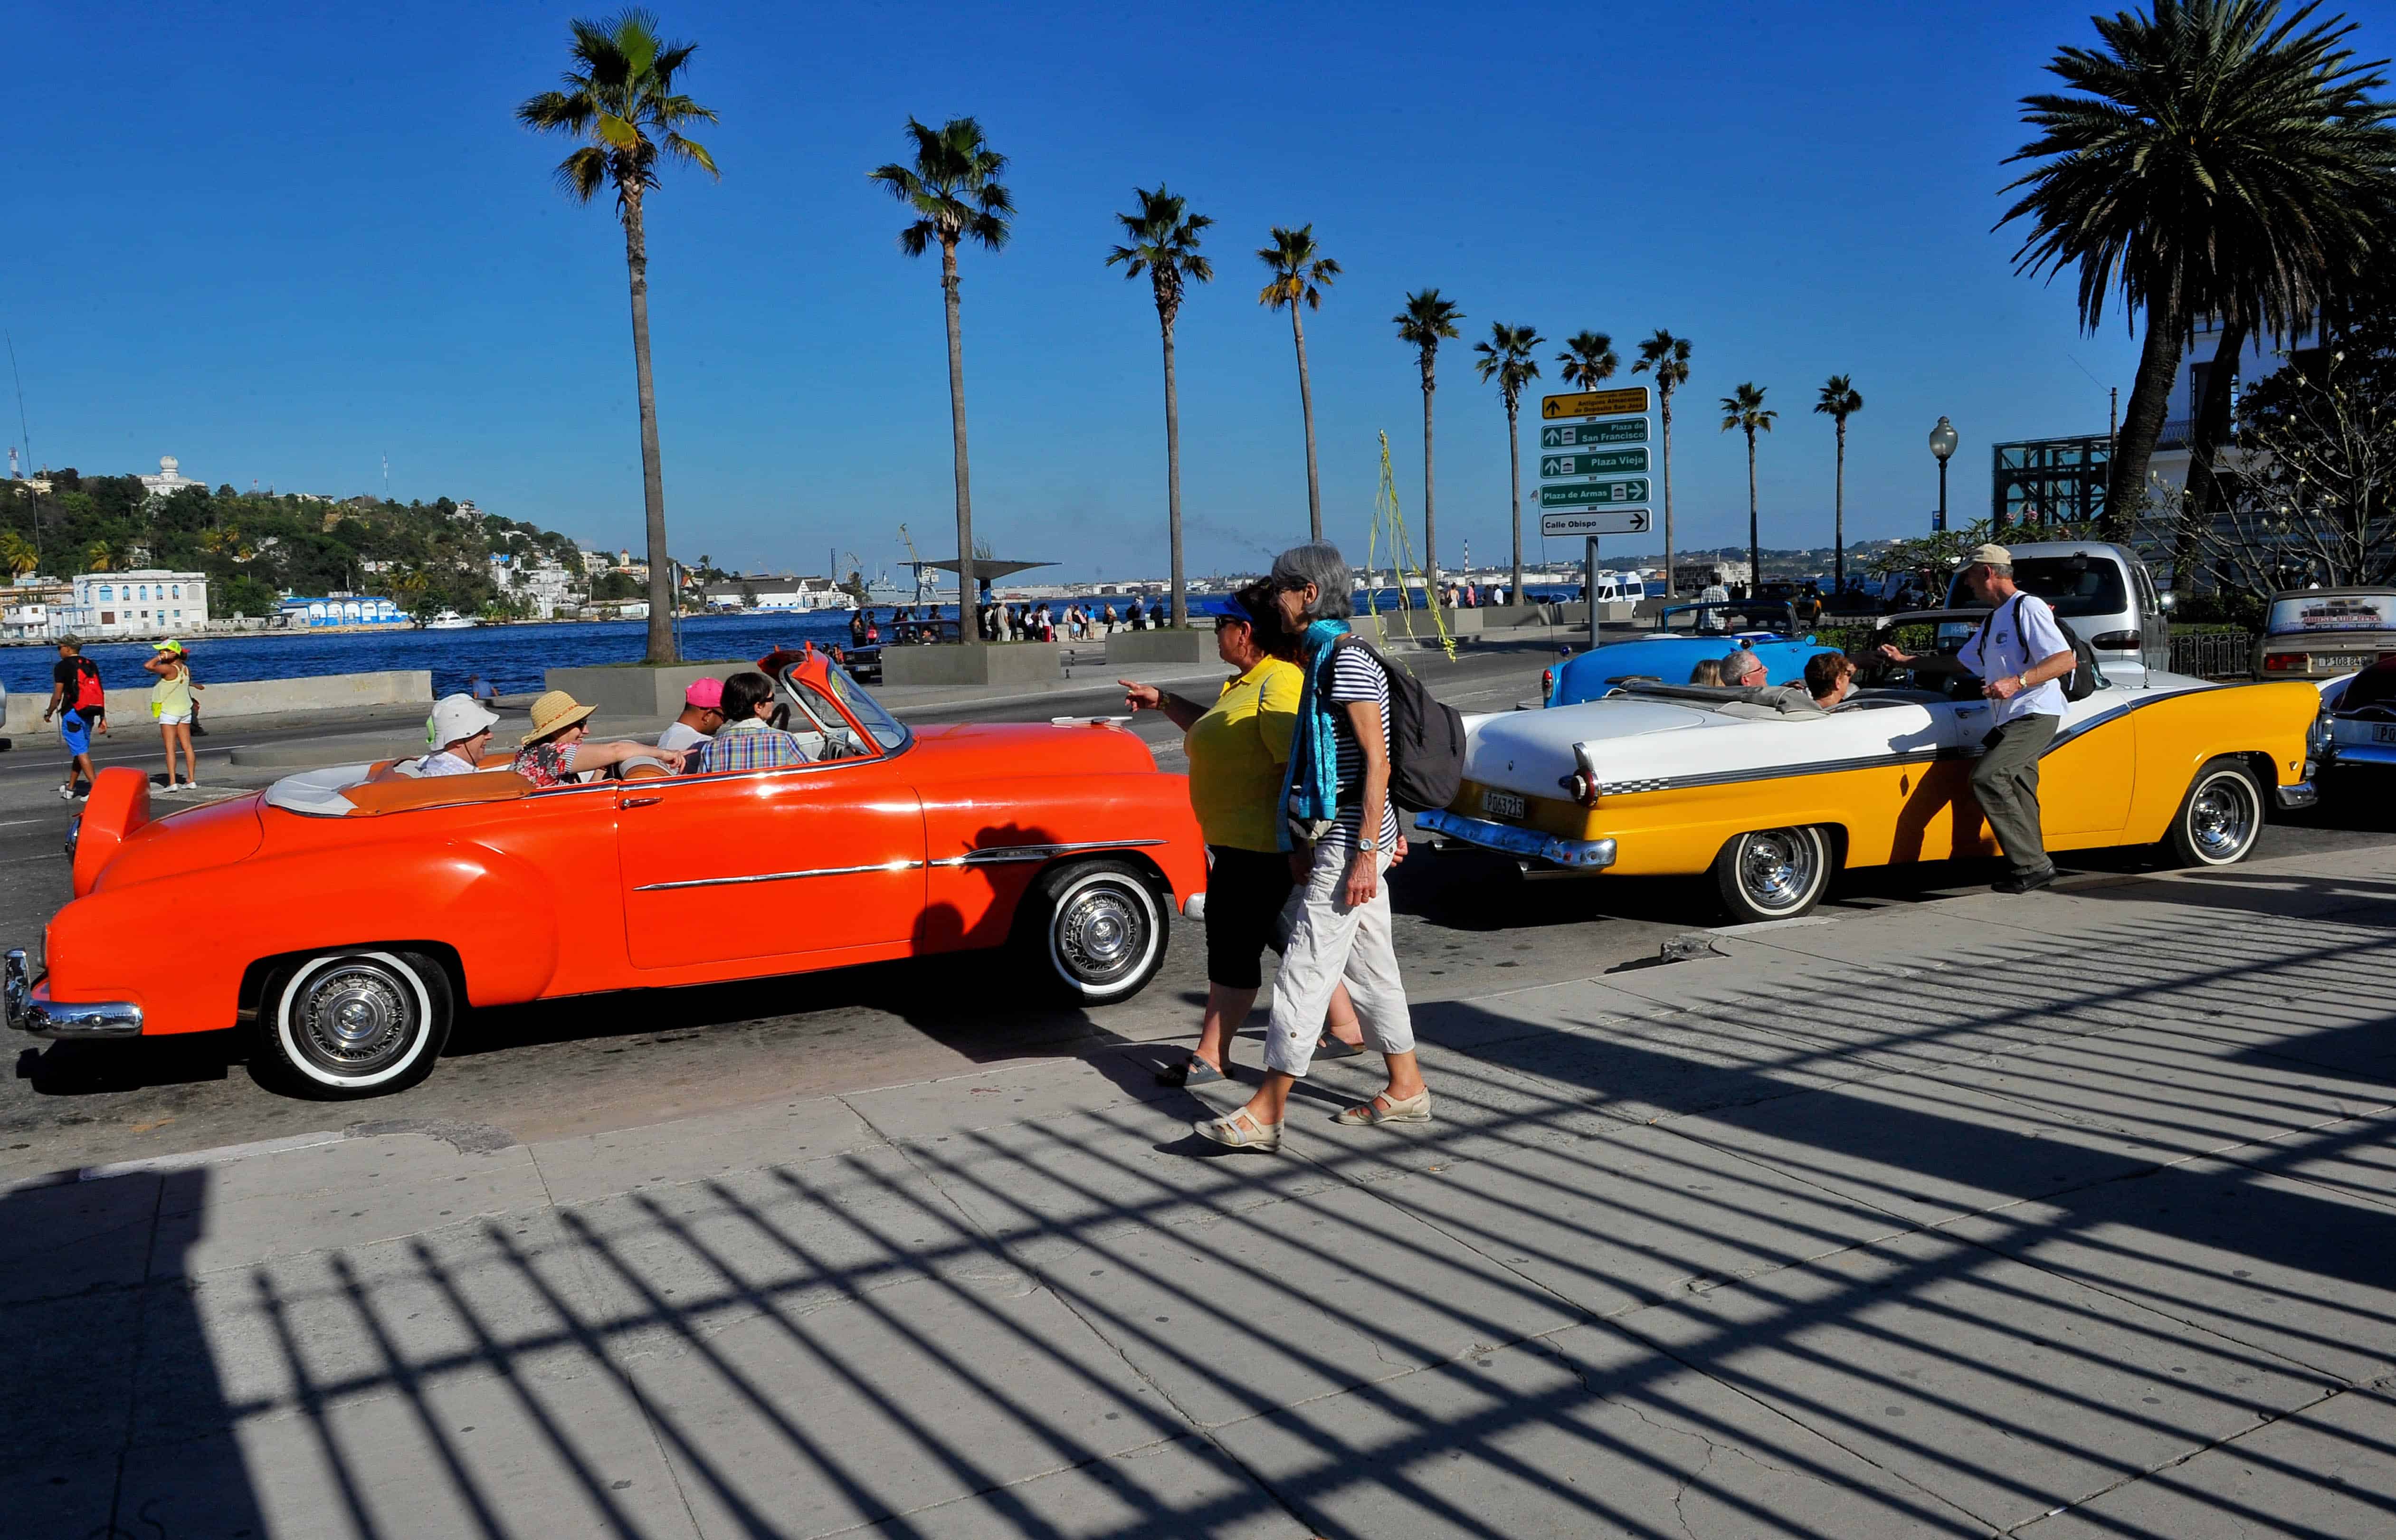 US tourists in Havana. U.S.-Cuba relations; diplomacy